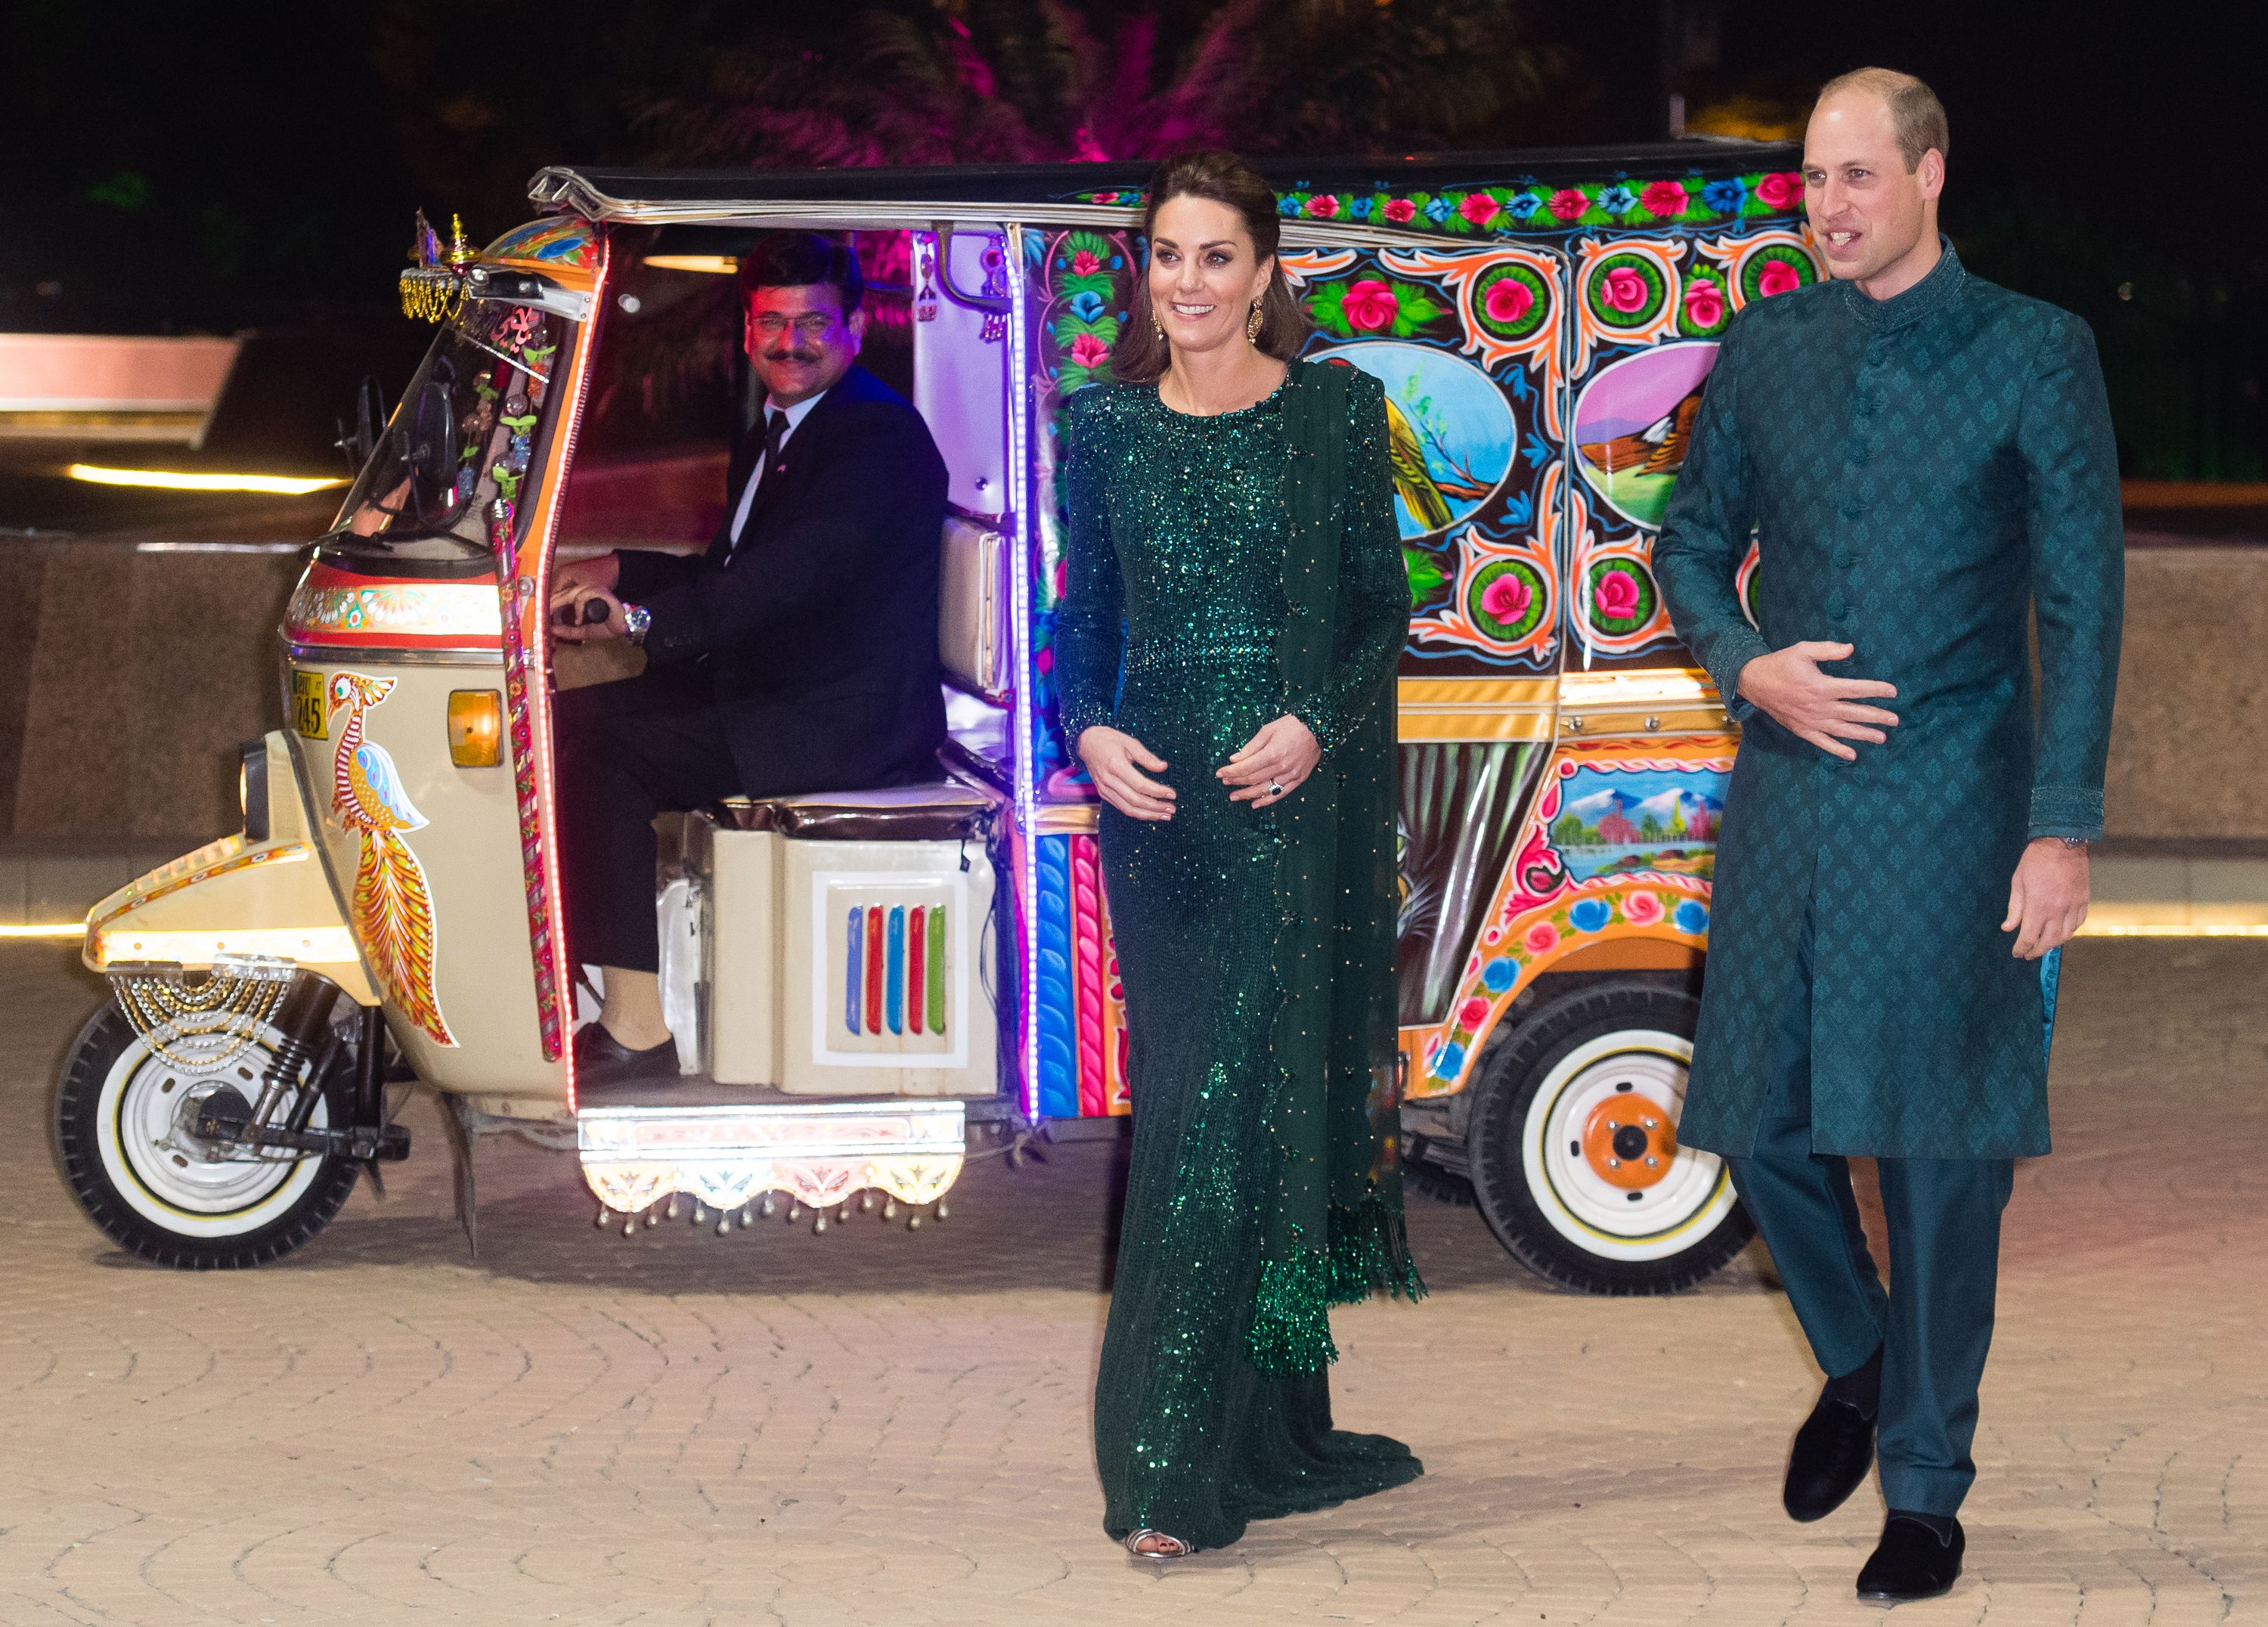 Prince William & Kate Middleton's Pakistan Tour